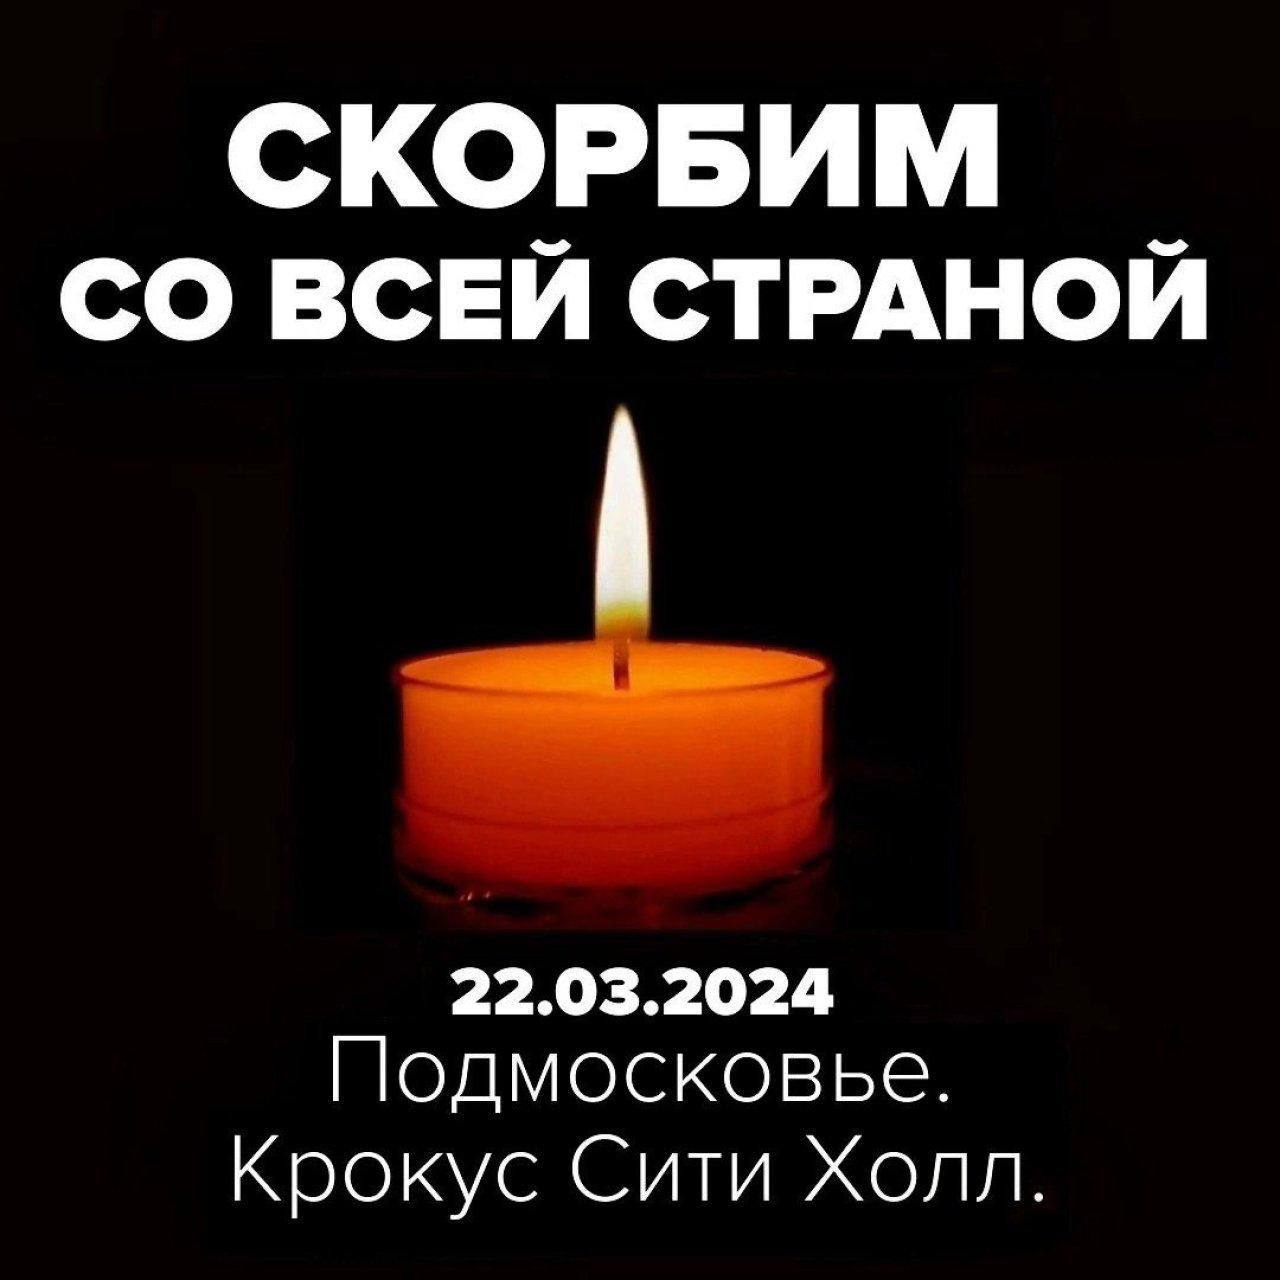 РосНОУ выражает соболезнования семьям погибших и пострадавших